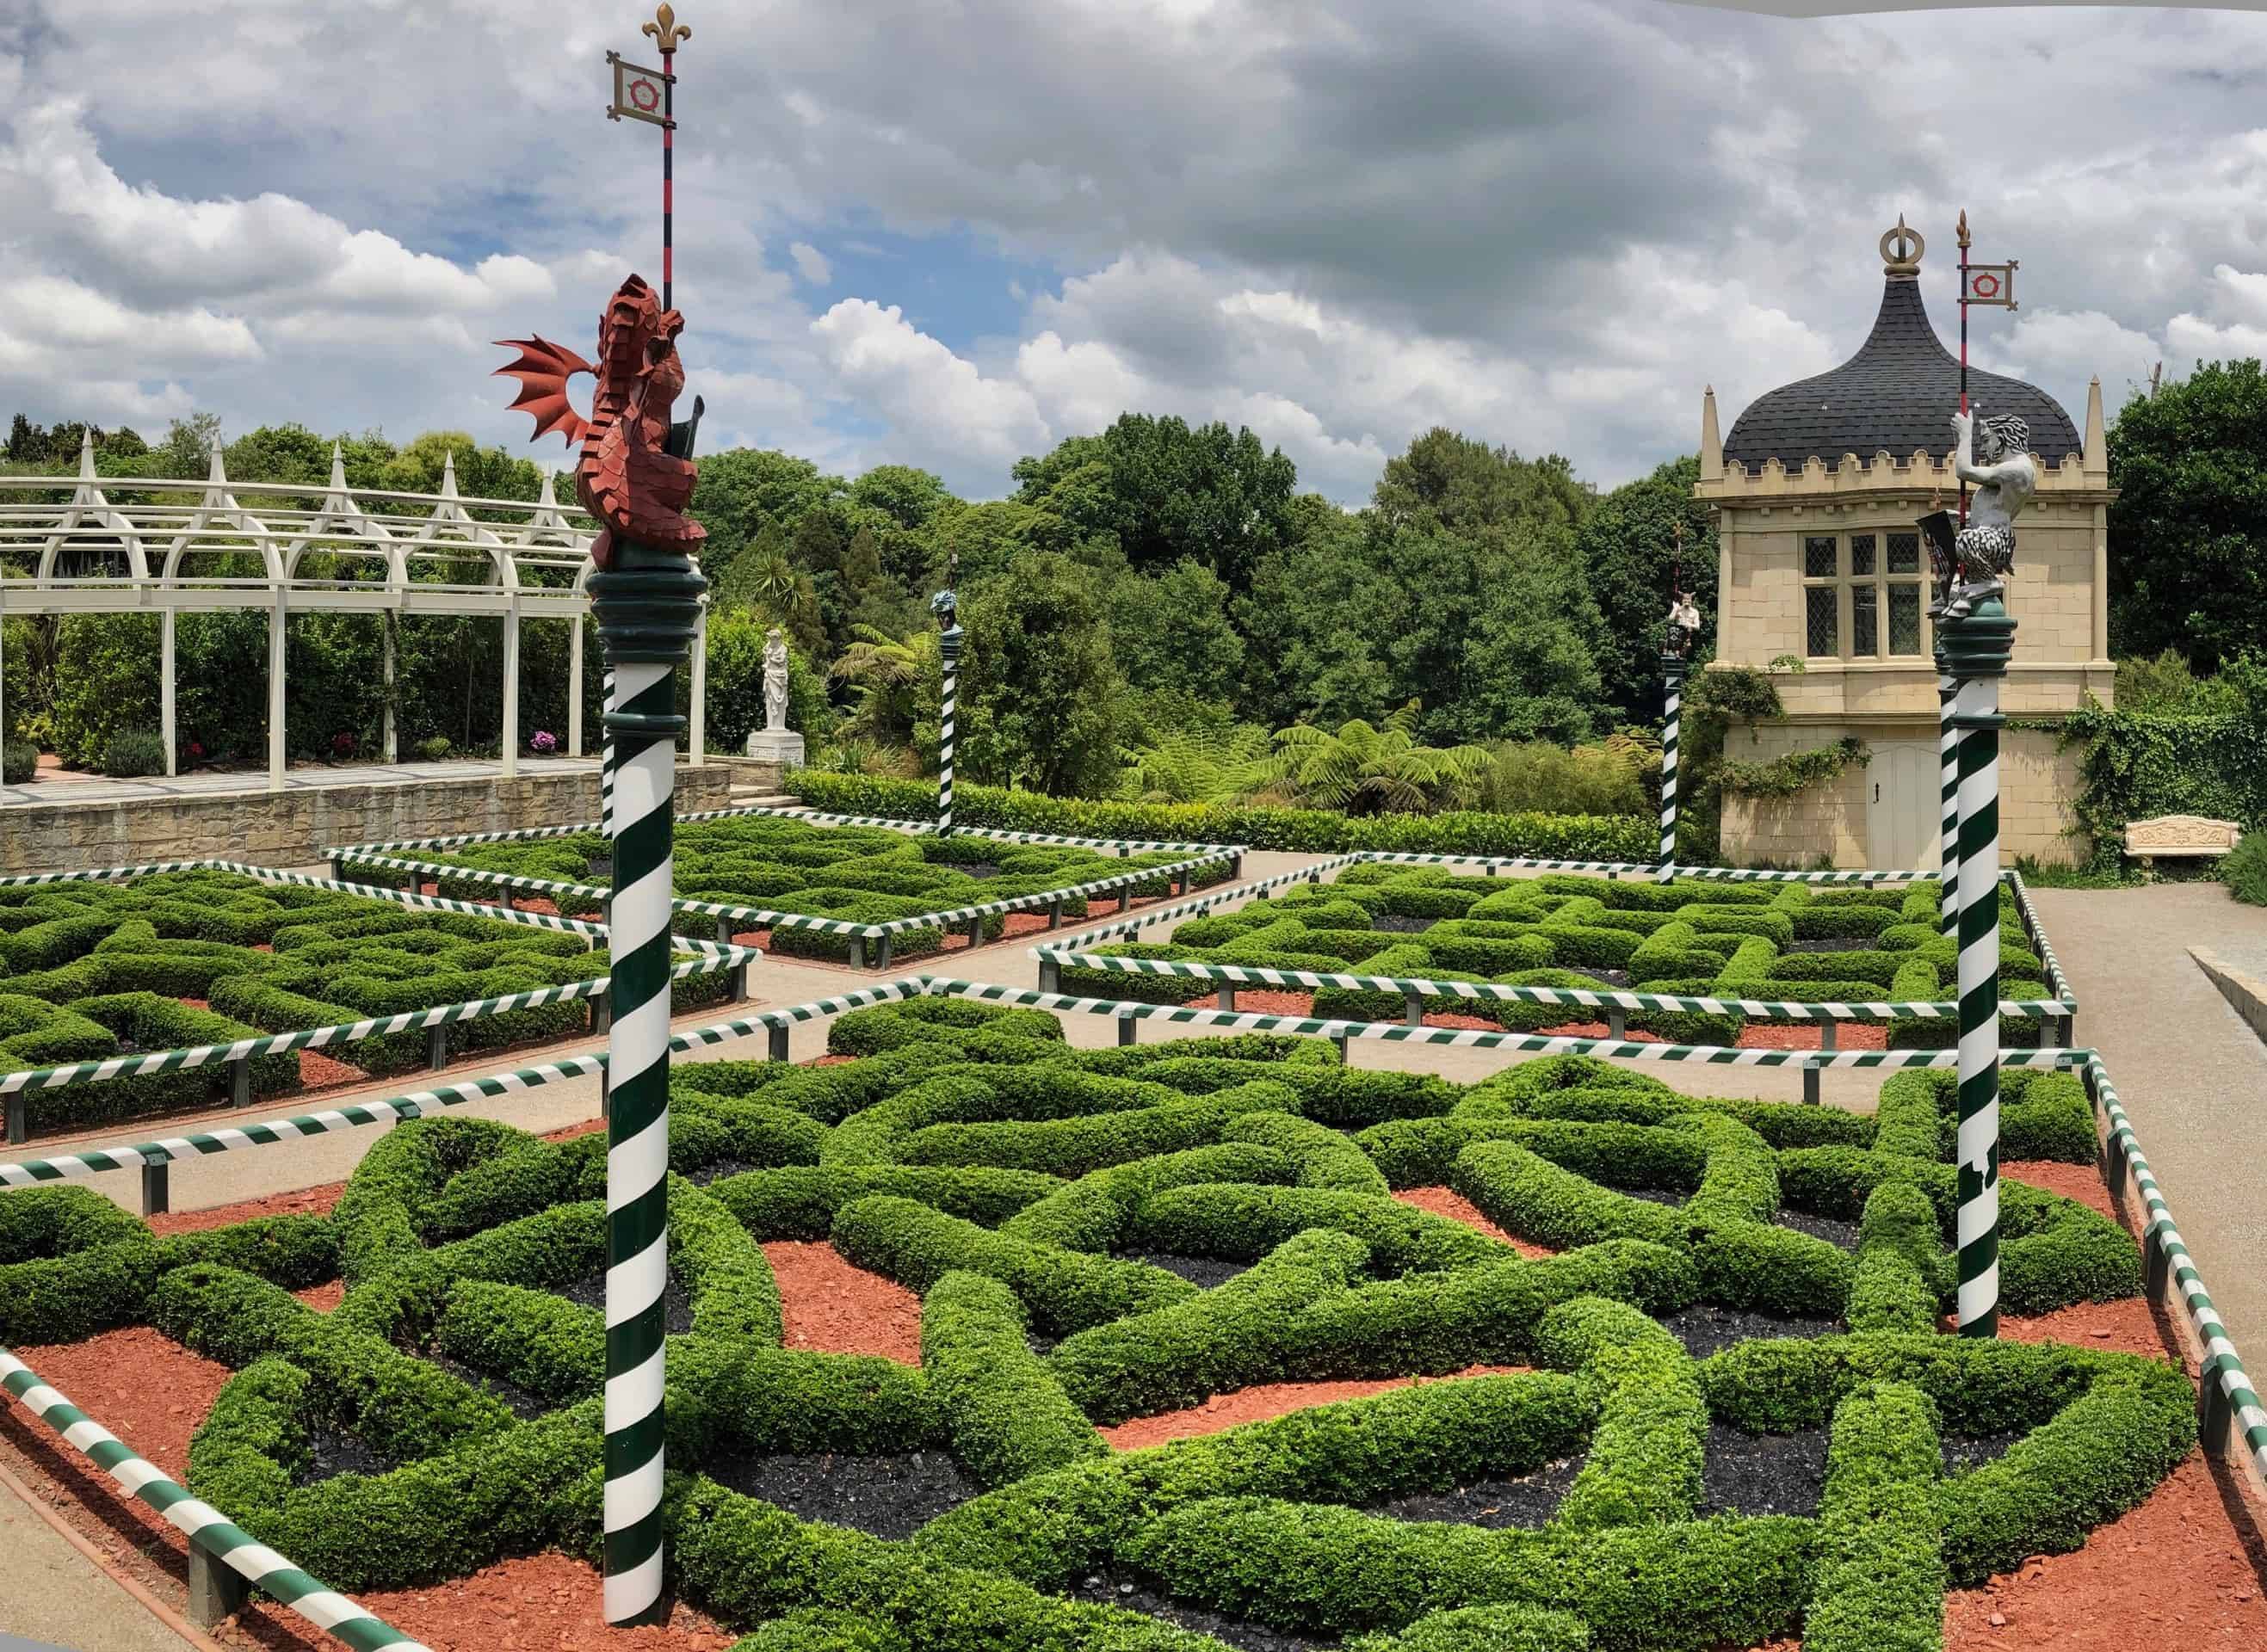 Awesome Park Renaissance Gardens